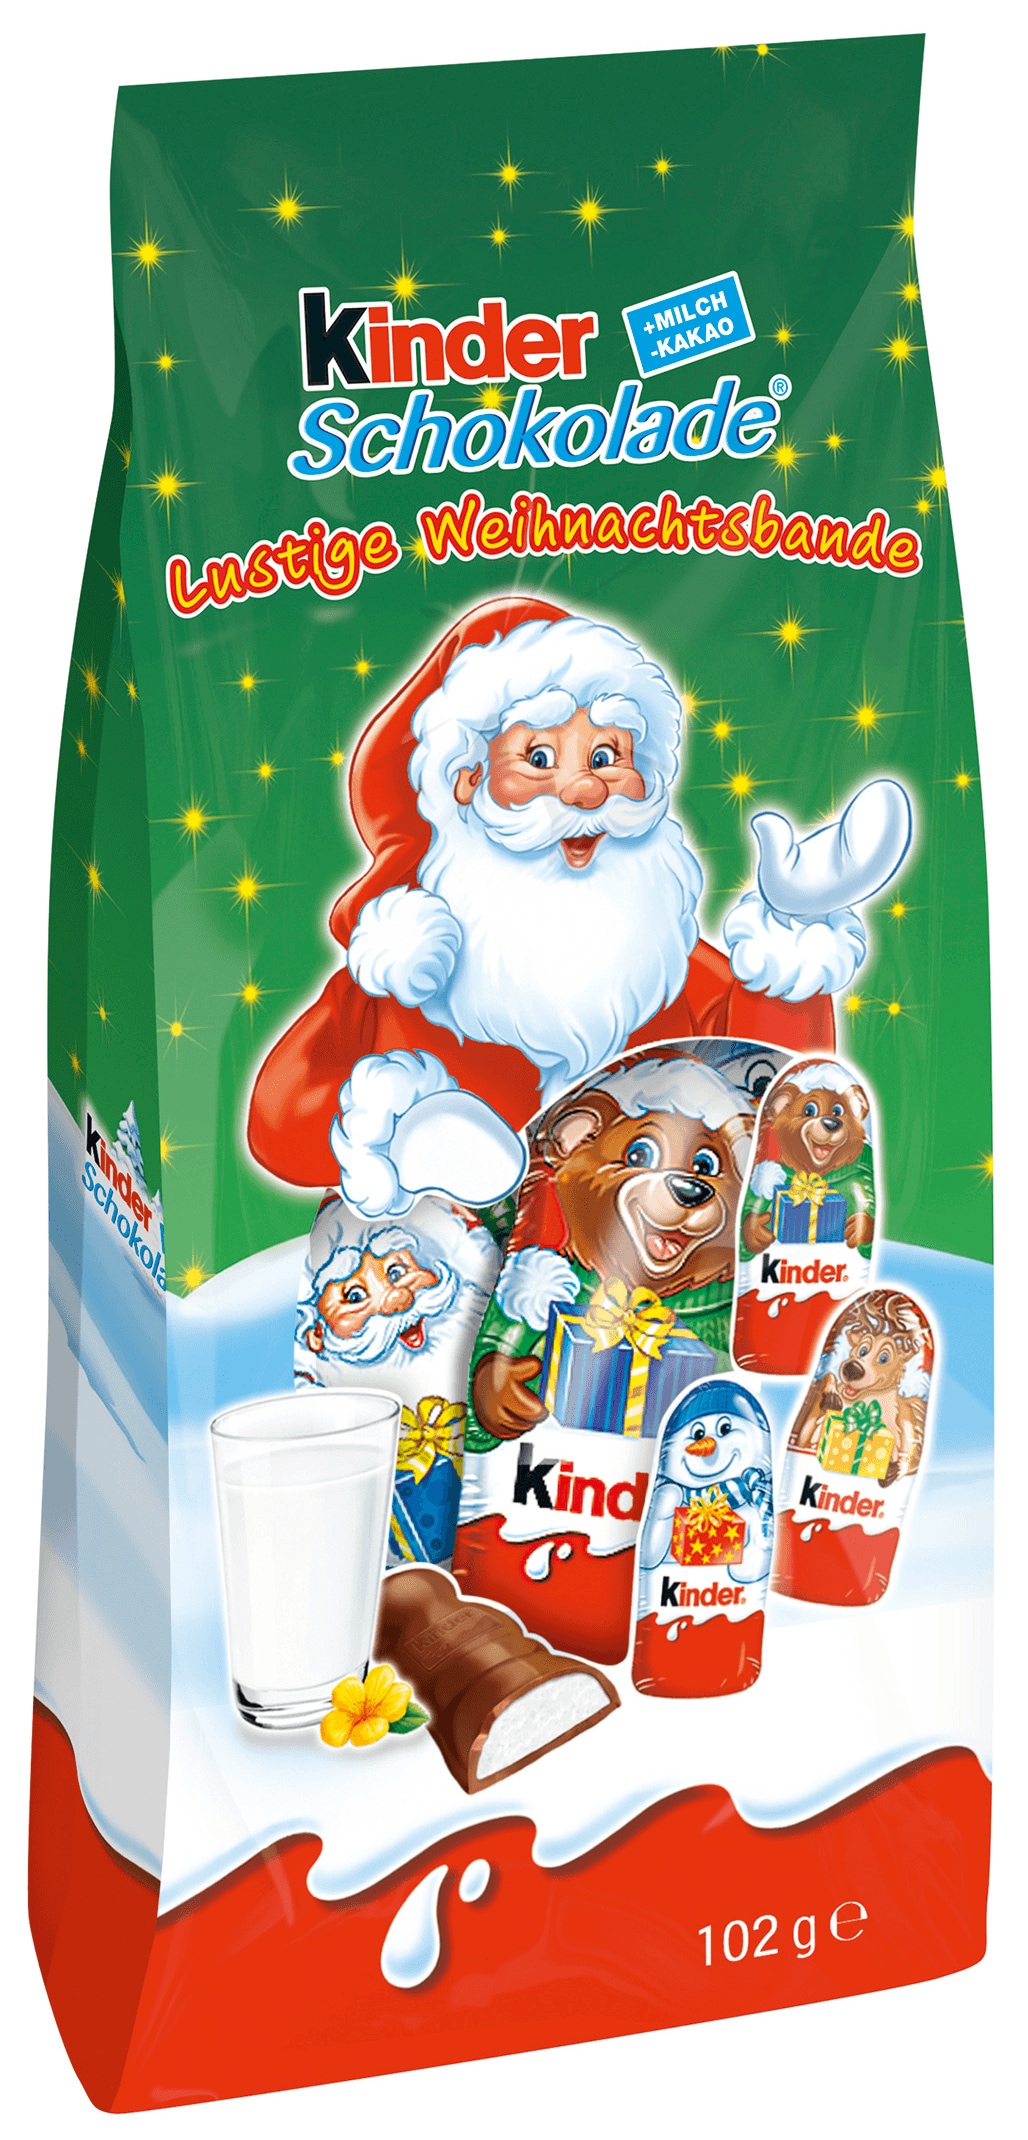 Kinder Schokolade Lustige Weihnachtsbande 102g Bei Rewe Online Bestellen